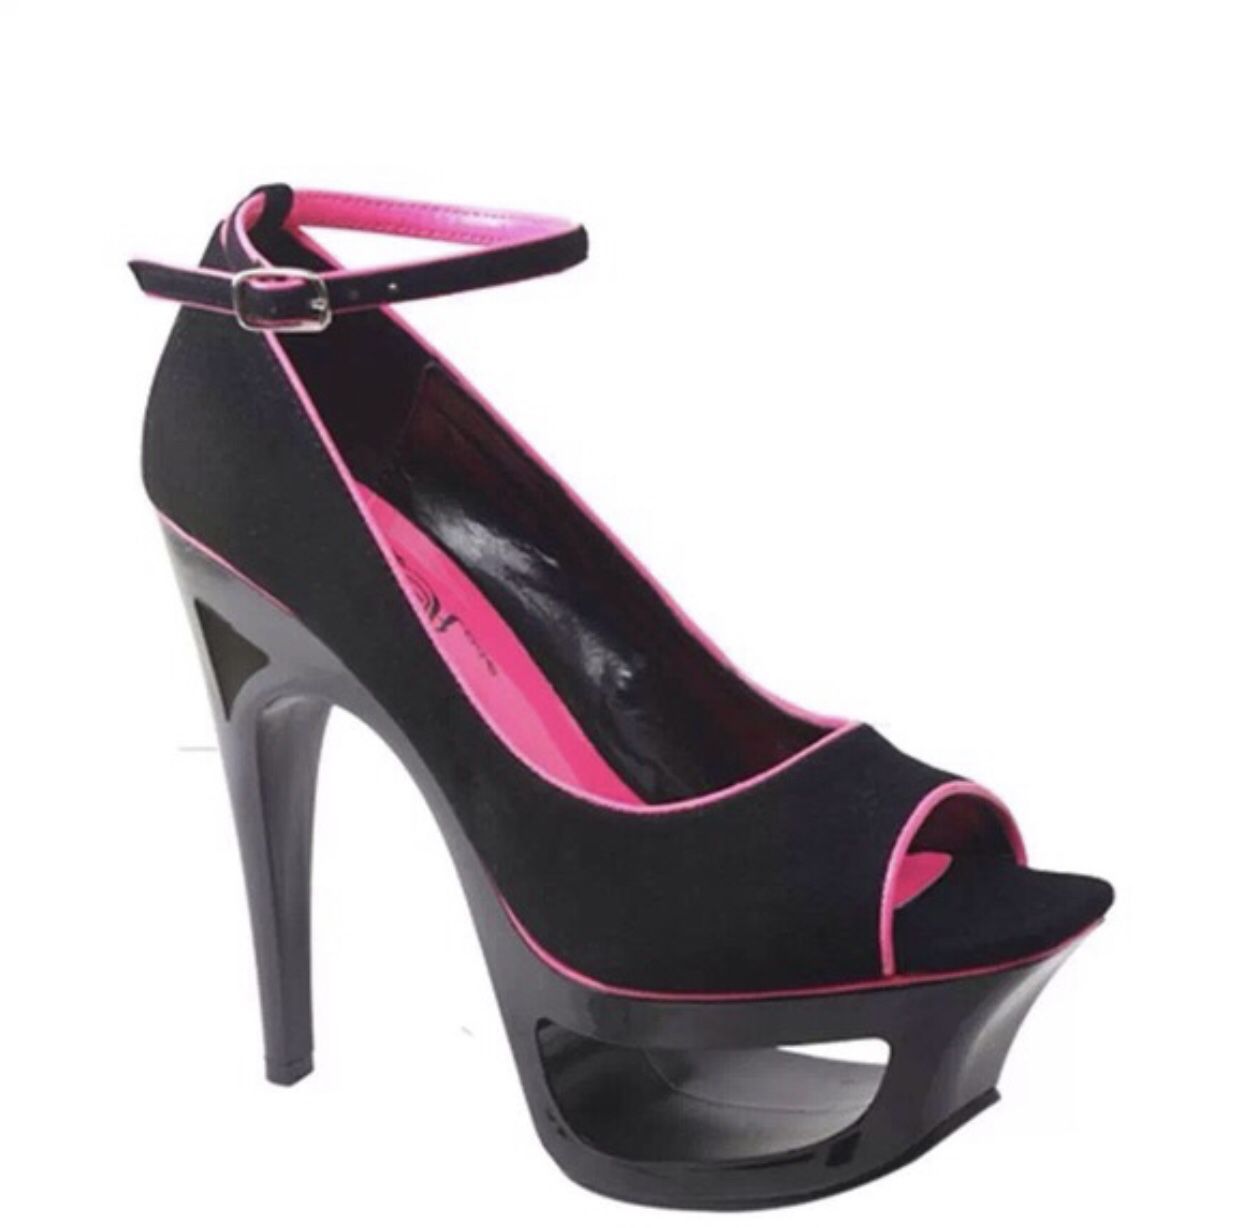 Ladies New Black/Pink Trim Ankle Strap Peep Toe Platform Heels